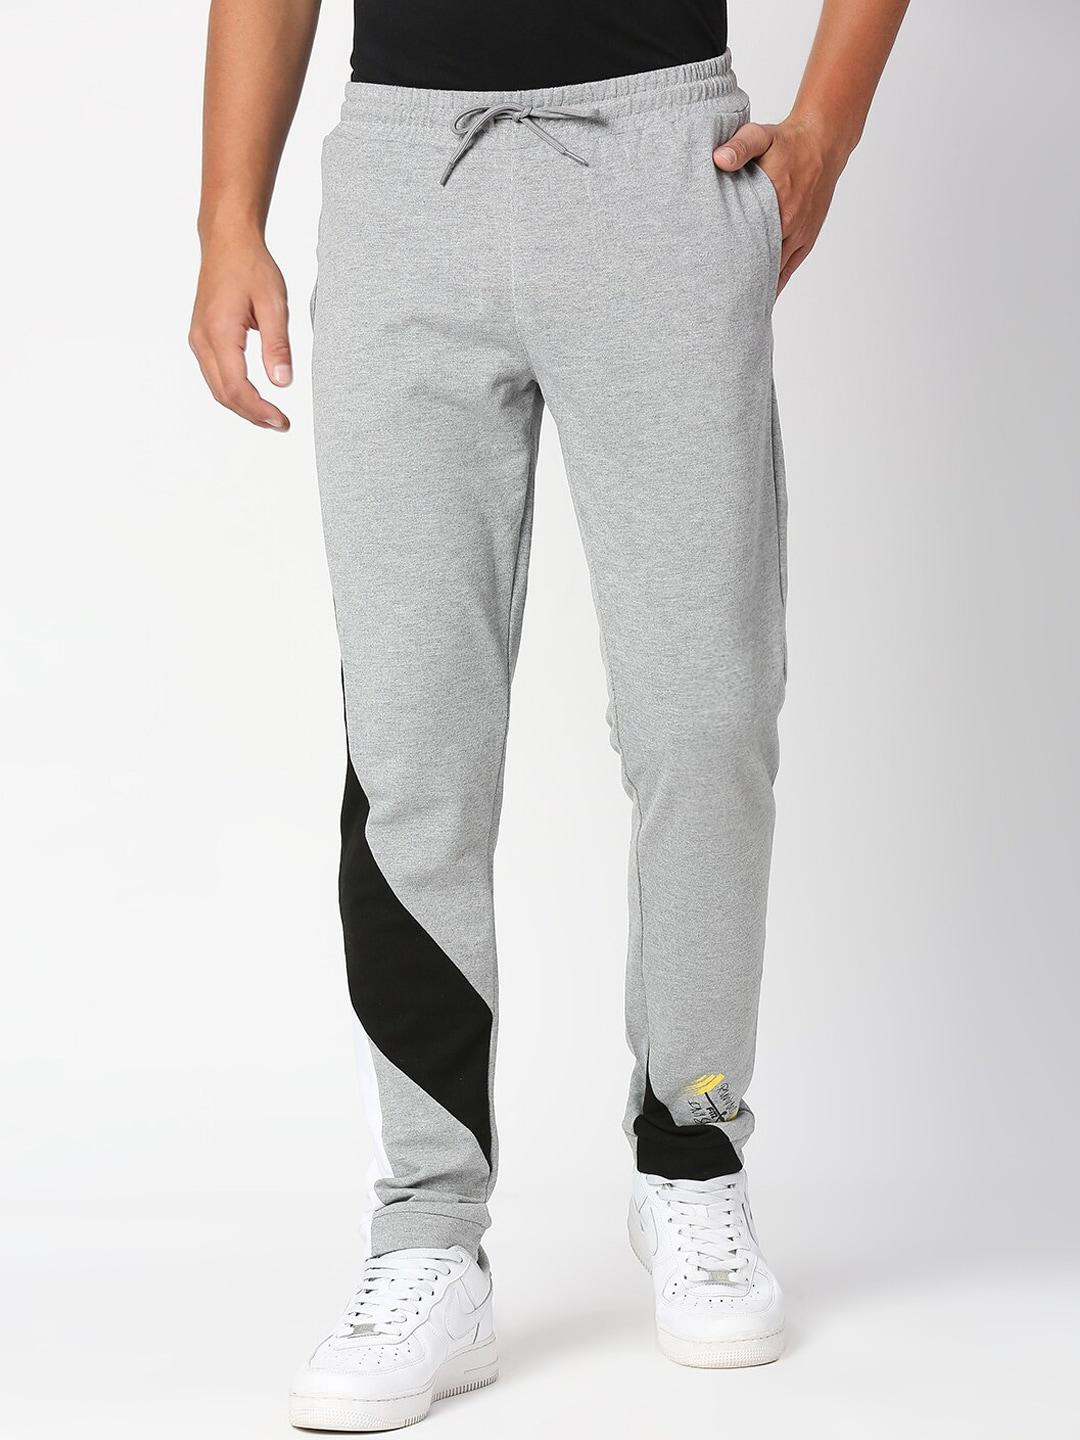 fitz men grey & black printed slim-fit joggers